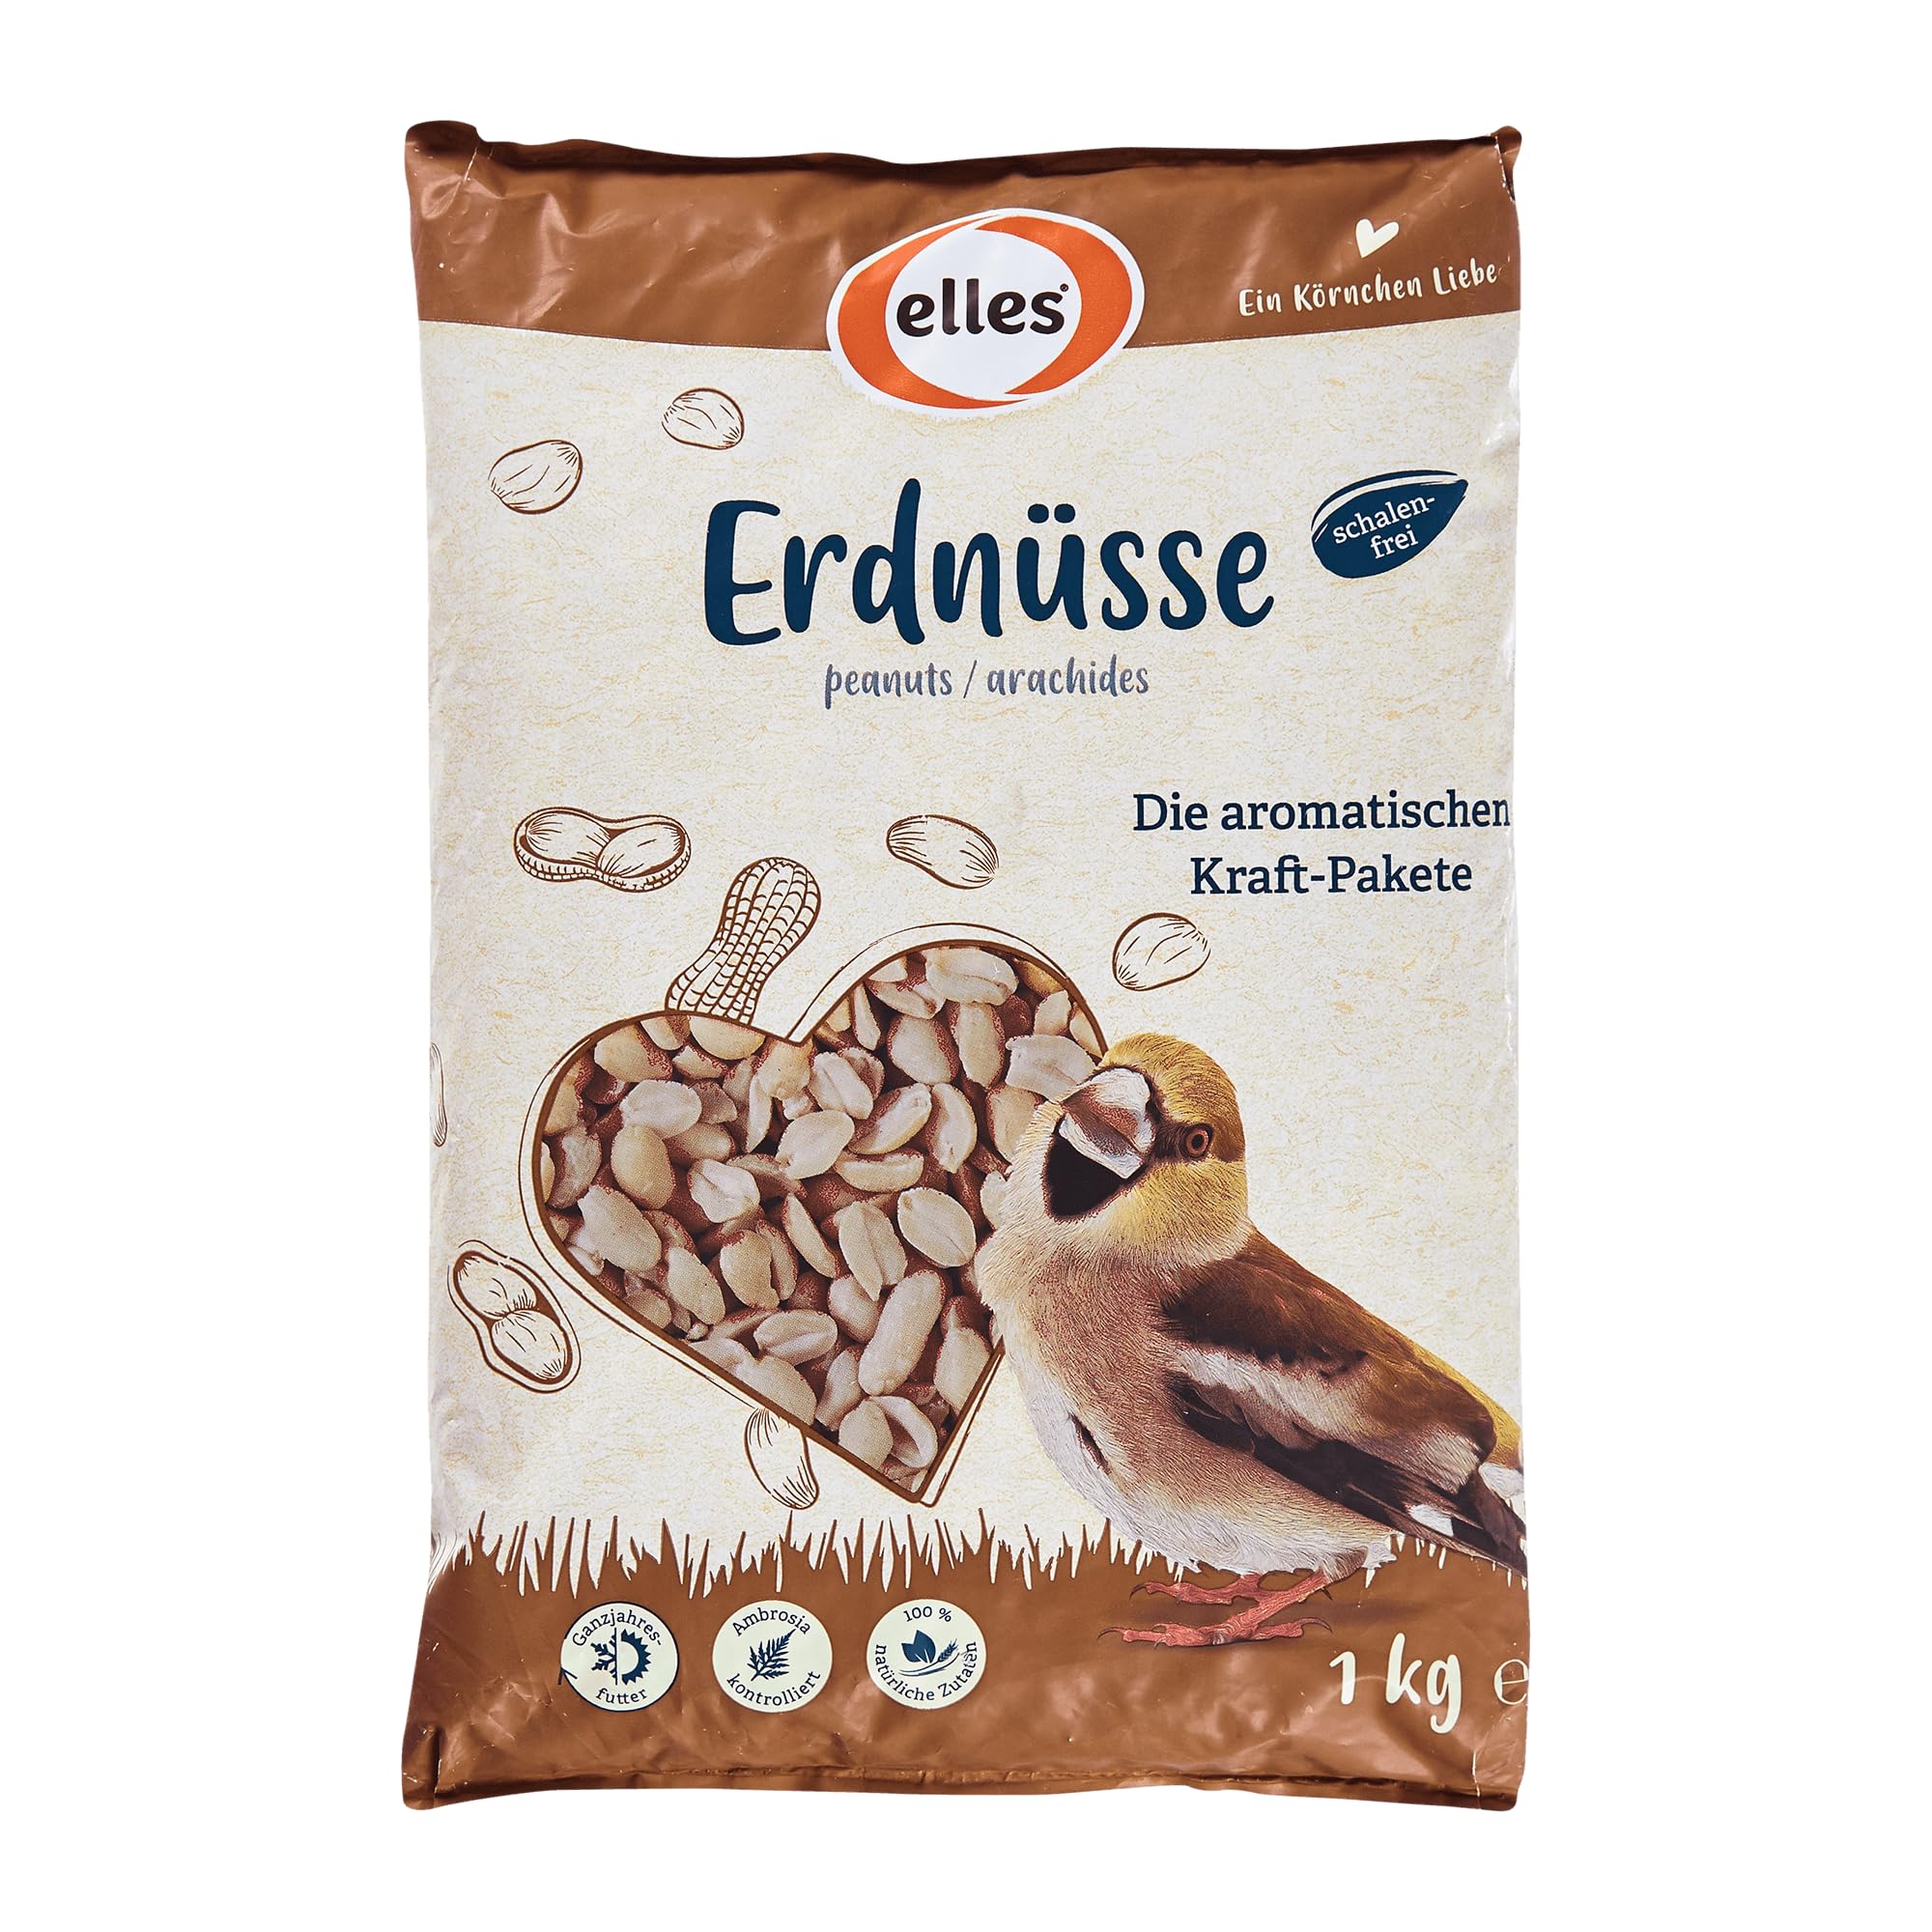 Elles Erdnüsse für Wildvögel 15 x 1kg I 100% natürlich I Schalenfrei & aromatisch I Energiereiche Ganzjahresfütterung